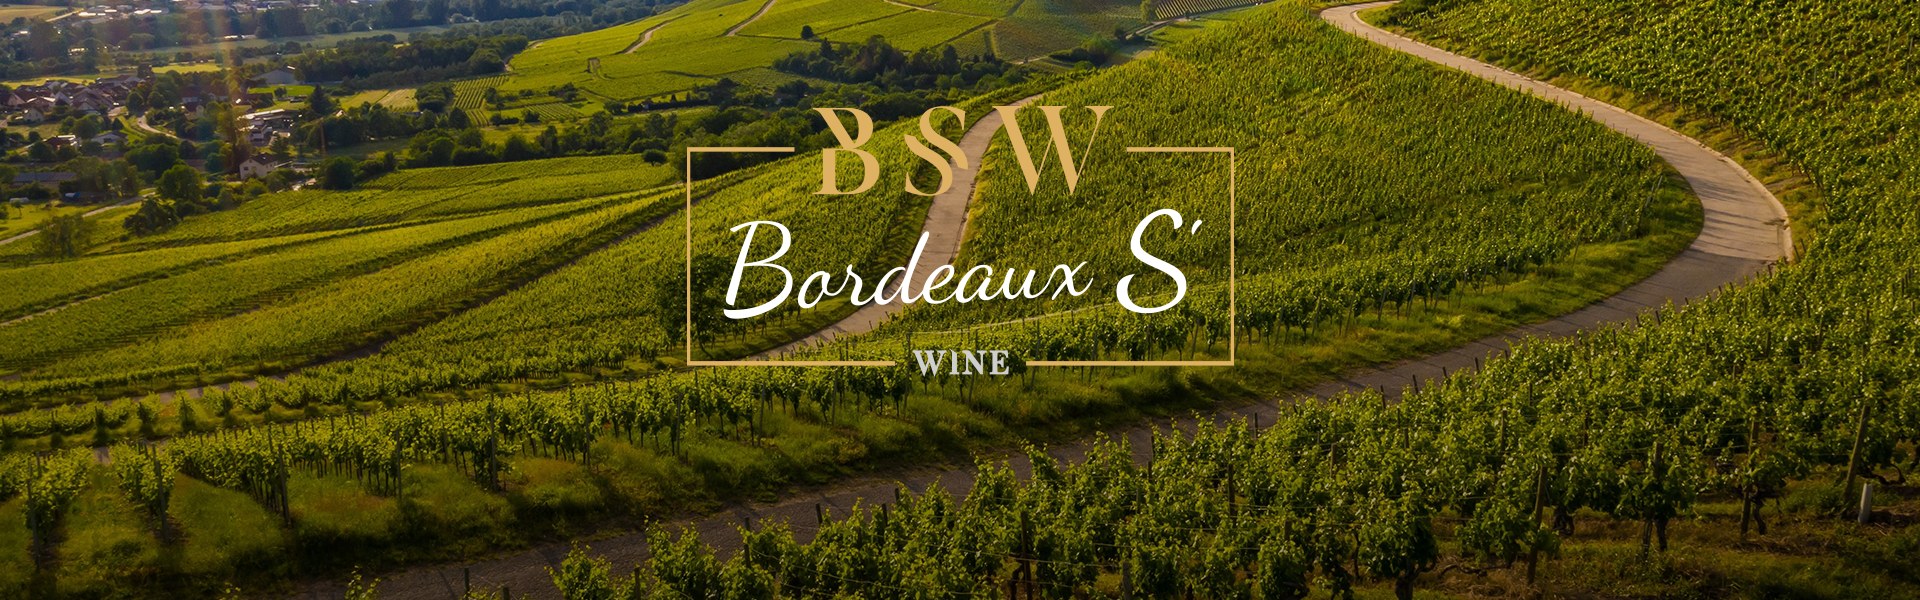 Visuel Bordeaux S'Wine